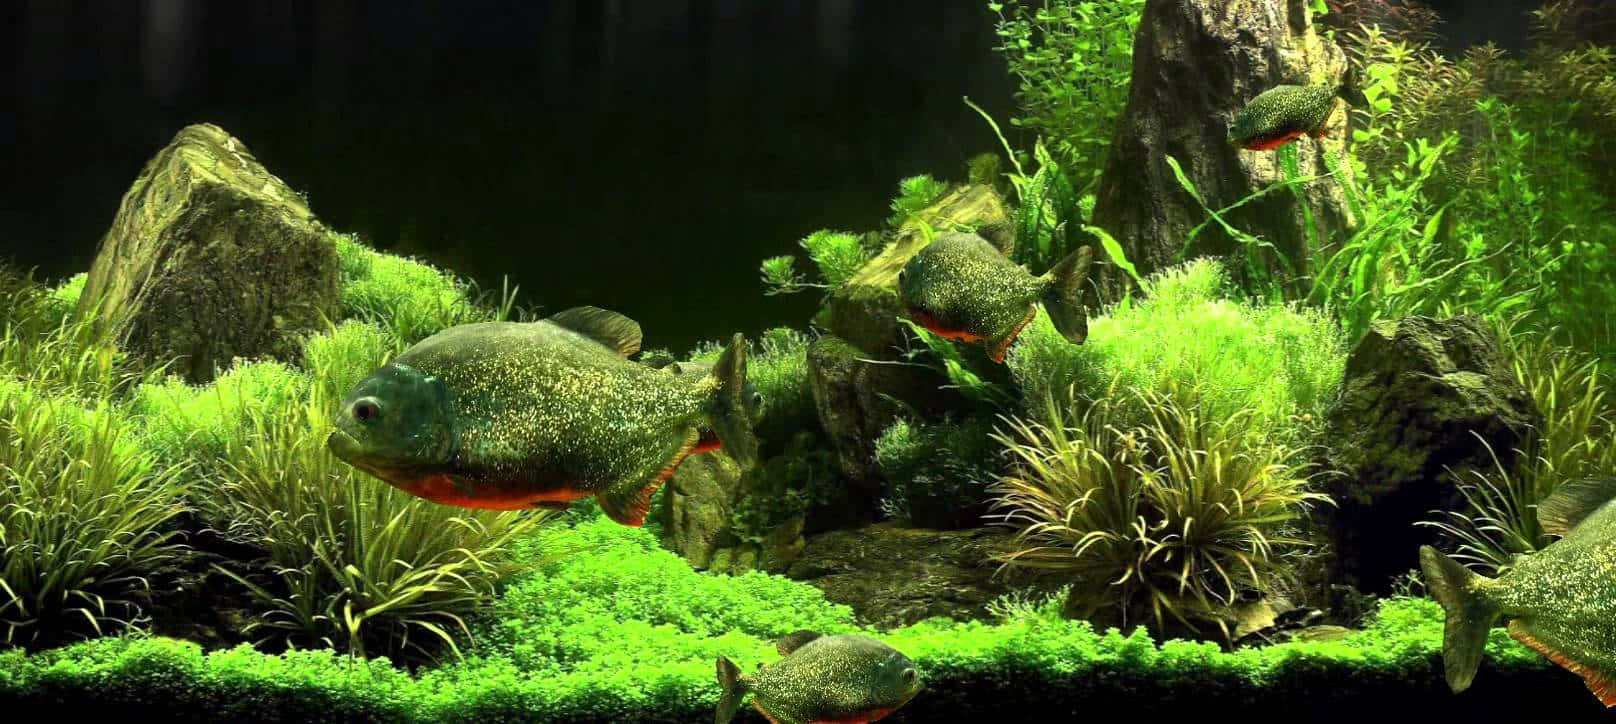 Hintergrundbildfür Ein Aquarium Mit Rotbauch-piranhas